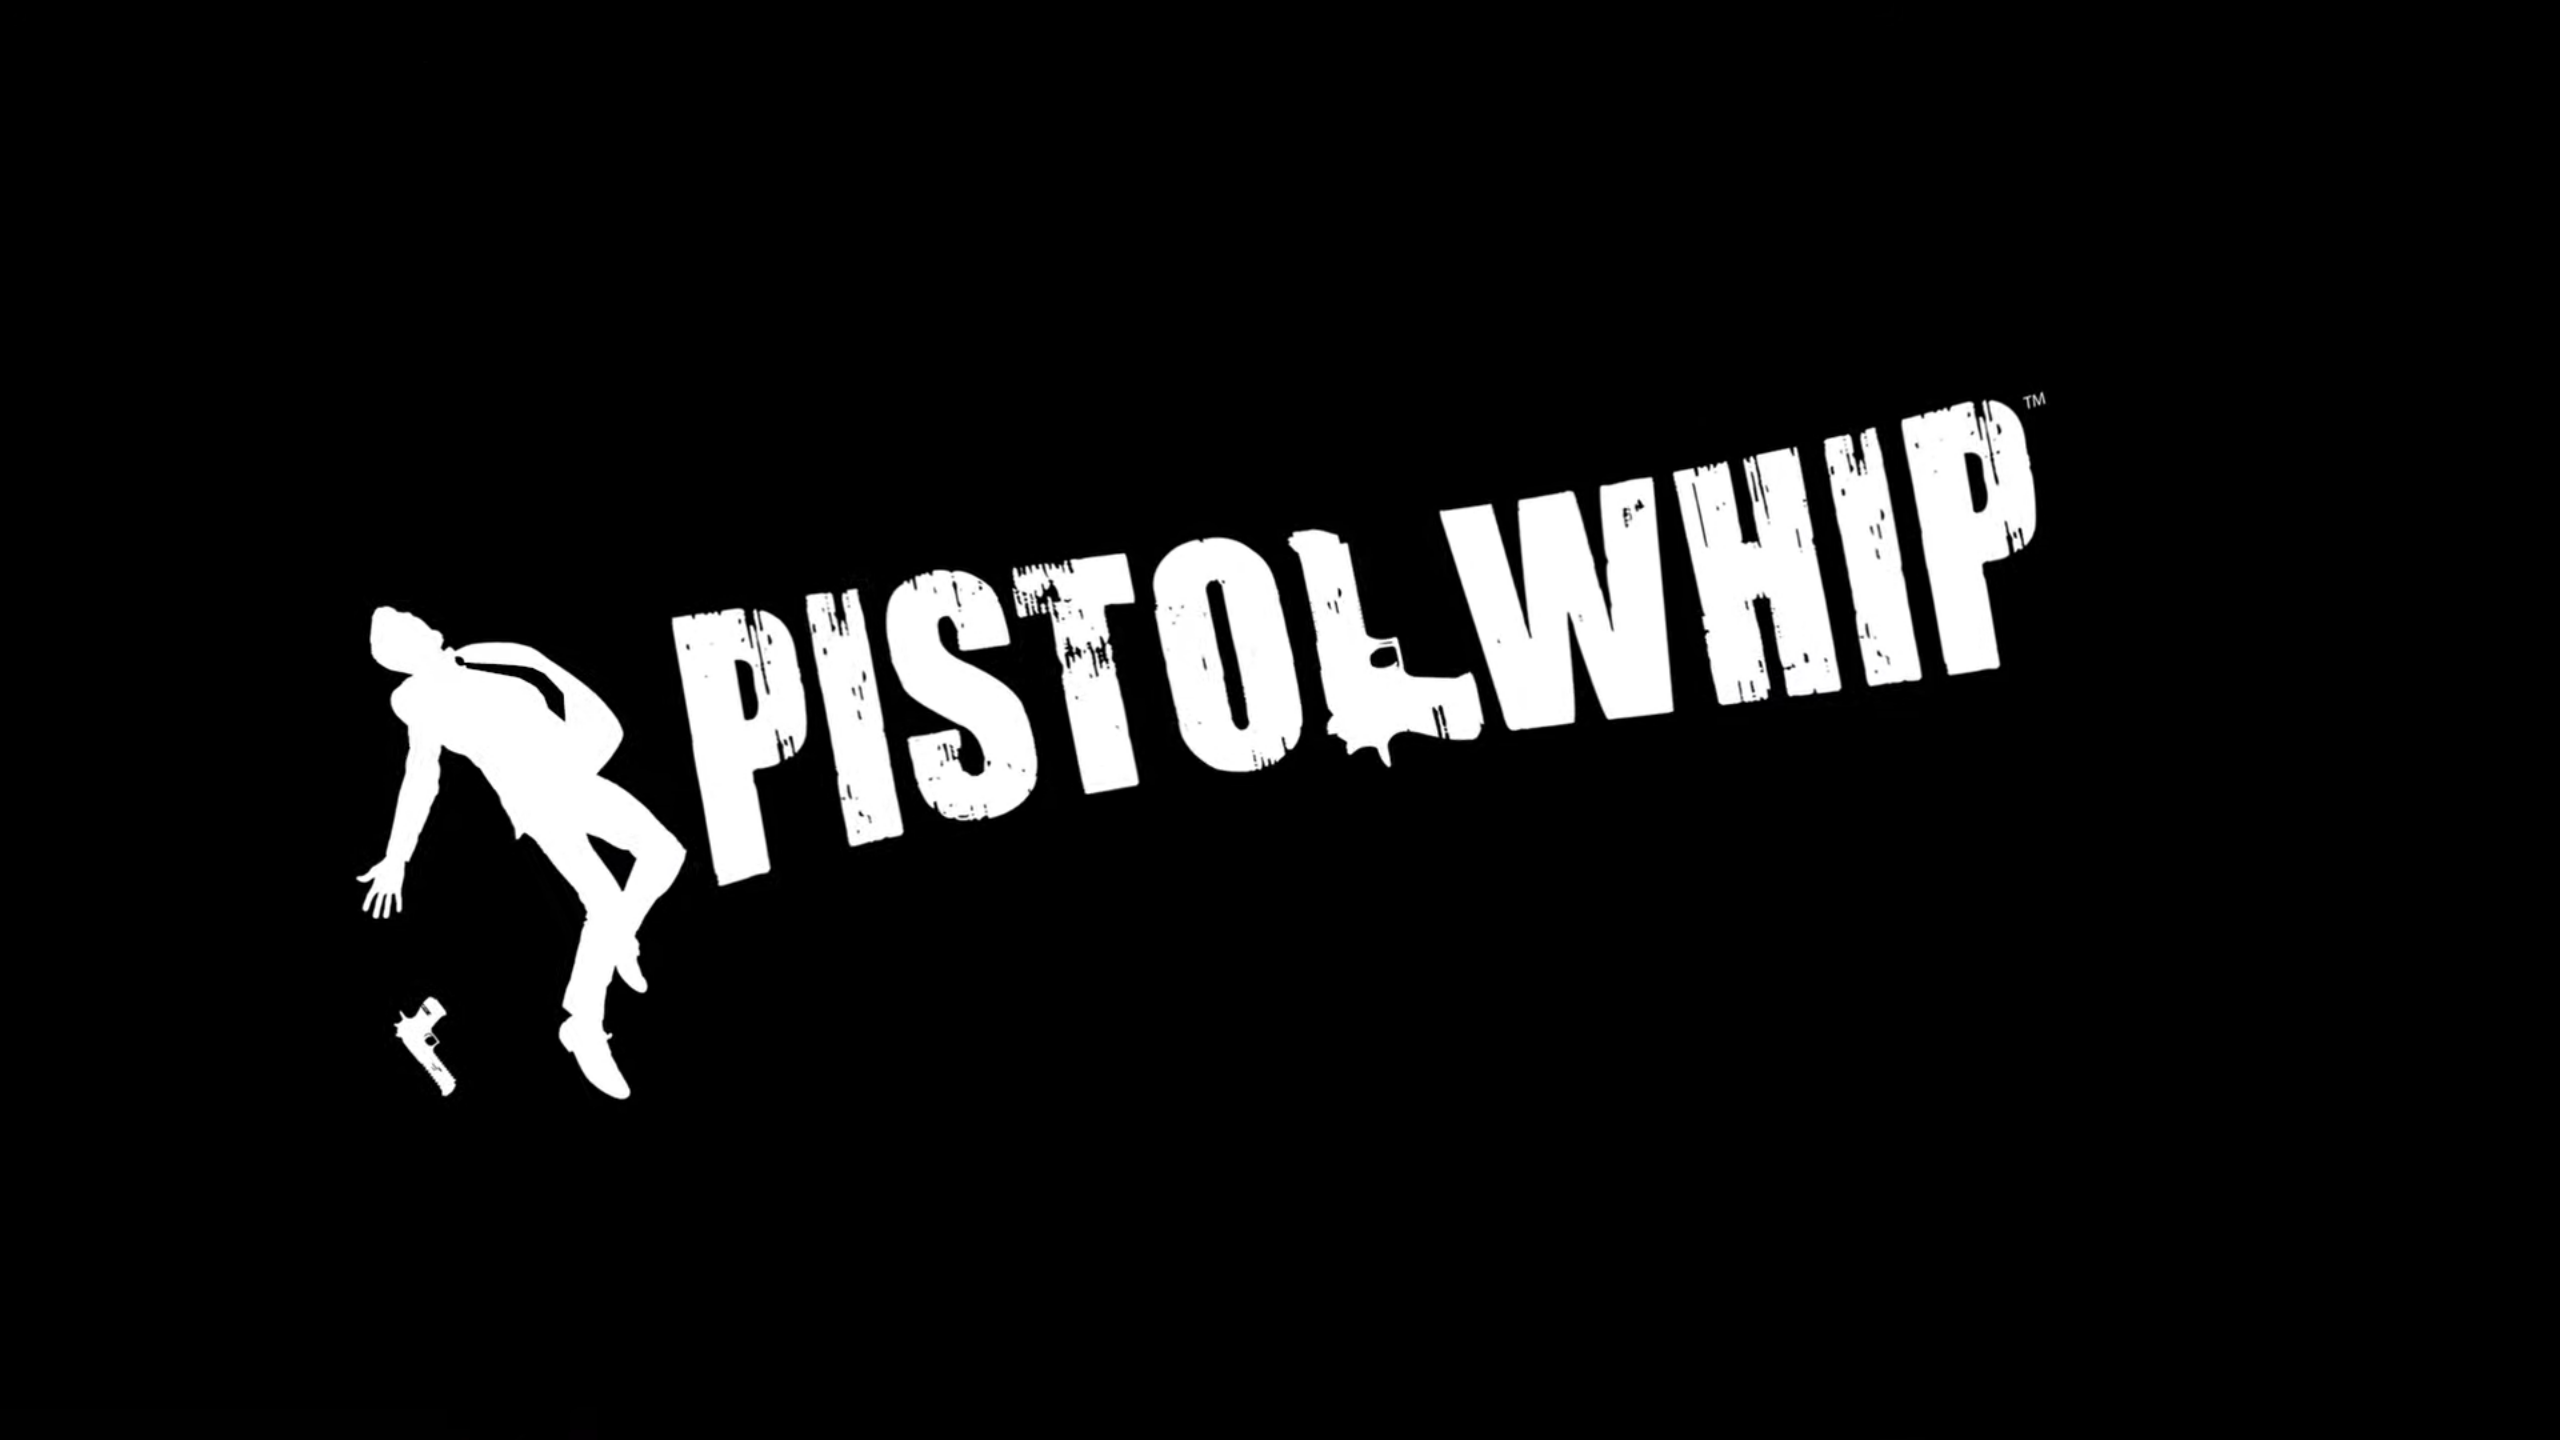 pistol whip pc